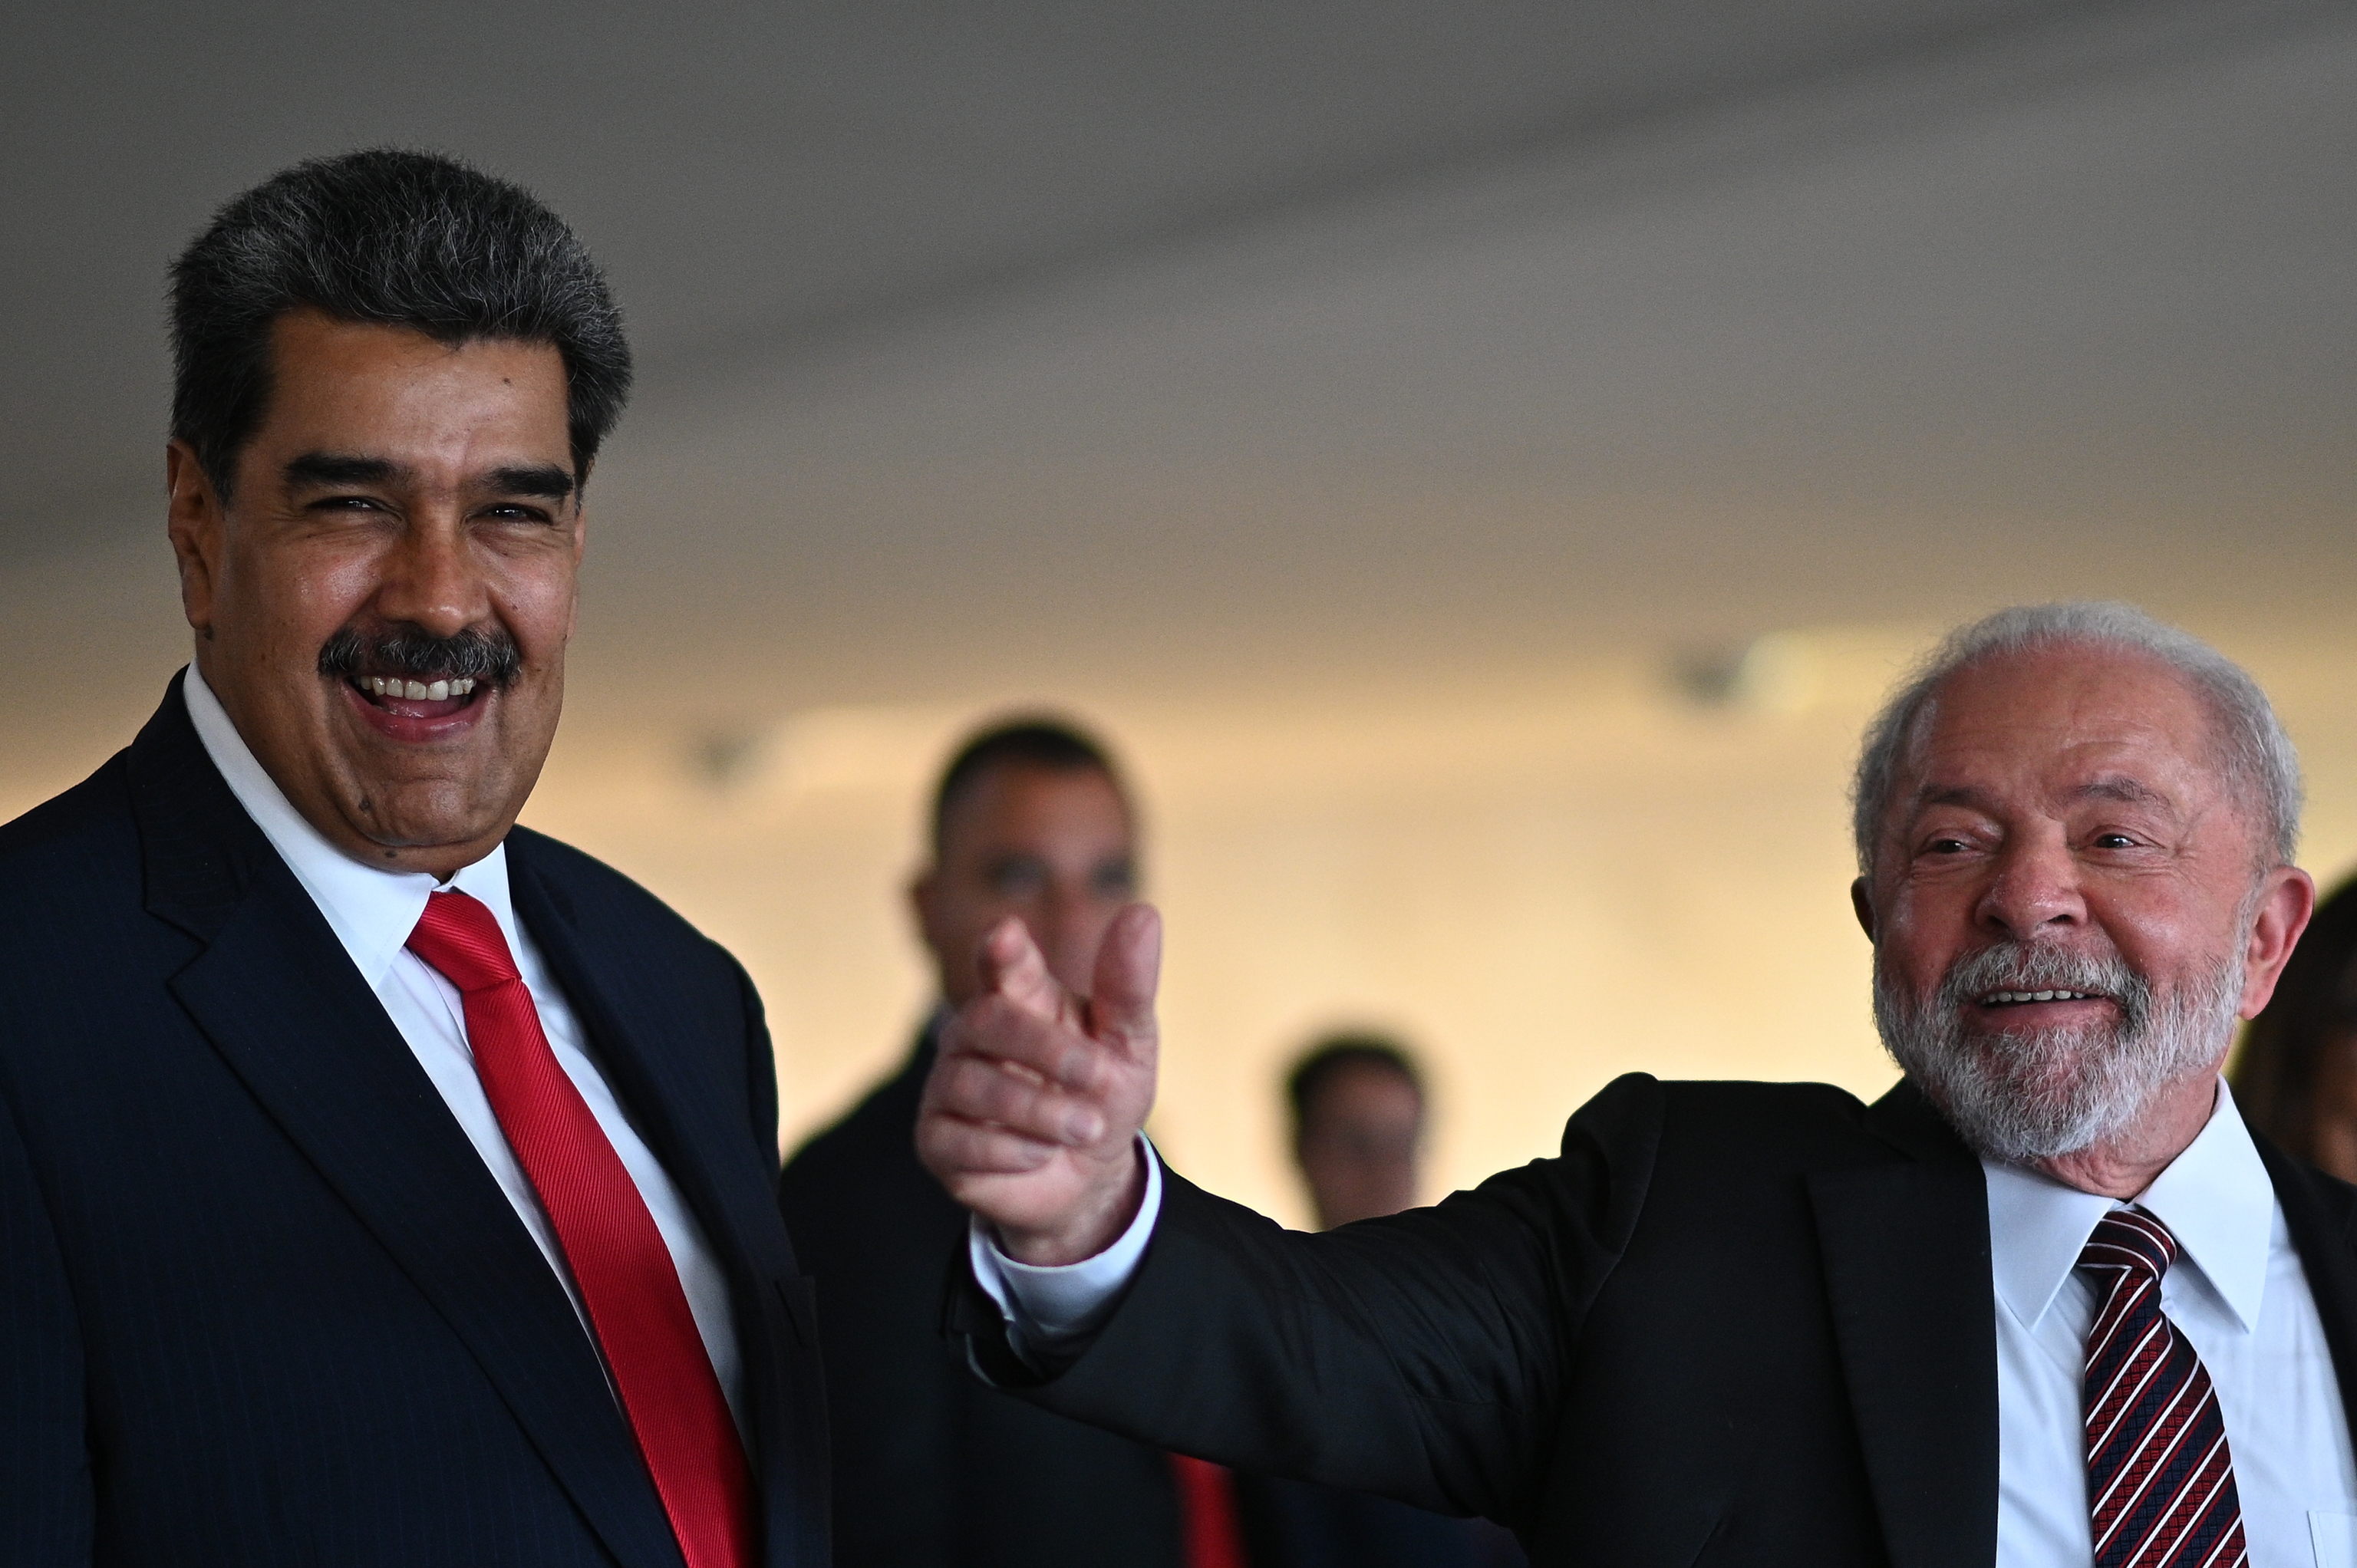 Lula no tiene consenso para resucitar Unasur, en una Cumbre que se prevé tormentosa por su decidido apoyo a Maduro